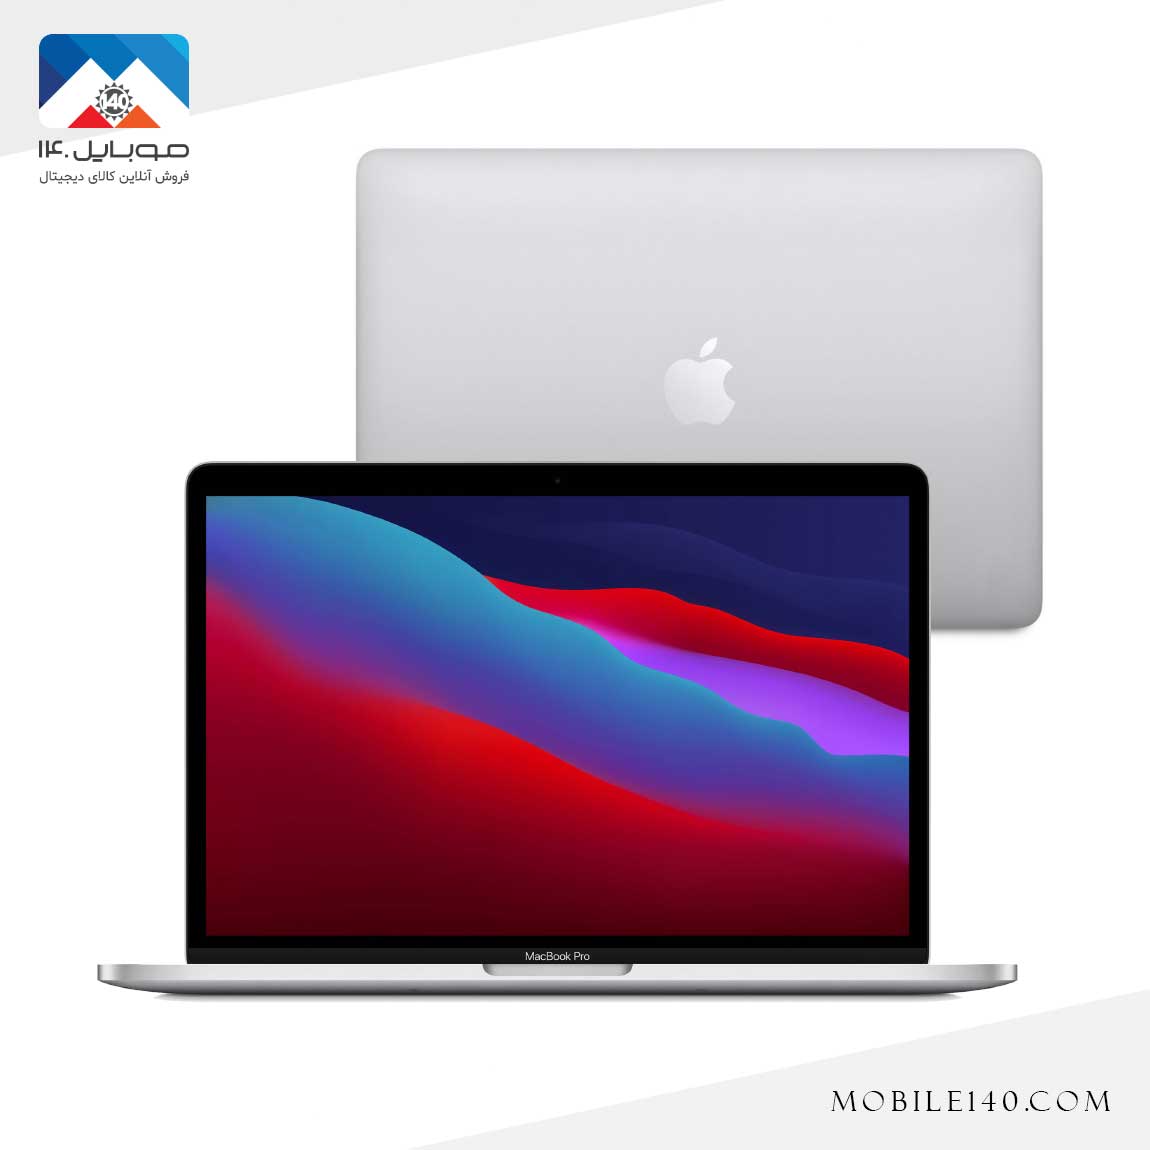  Apple Macbook Pro 2020 MYDA2 5